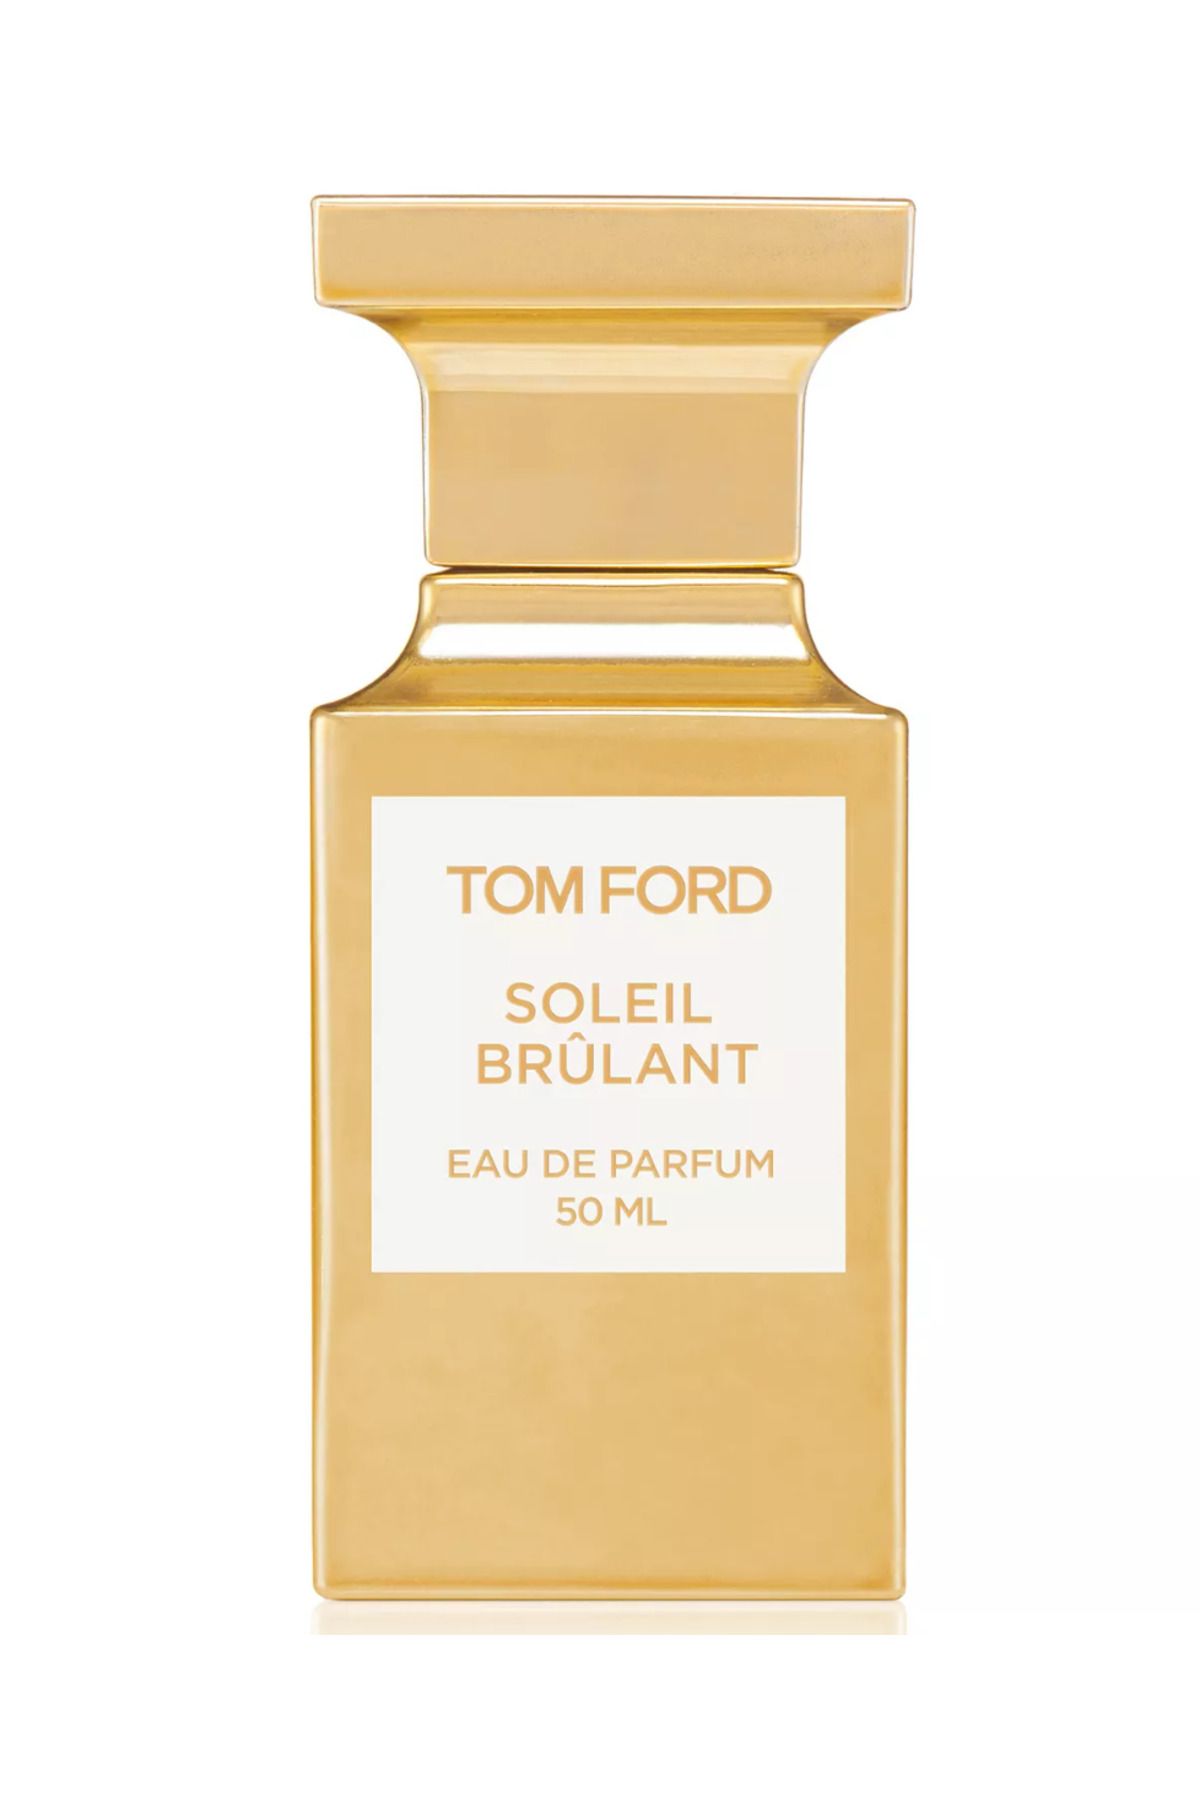 Tom Ford Soleil Brûlant Eau de Parfum 50 Ml